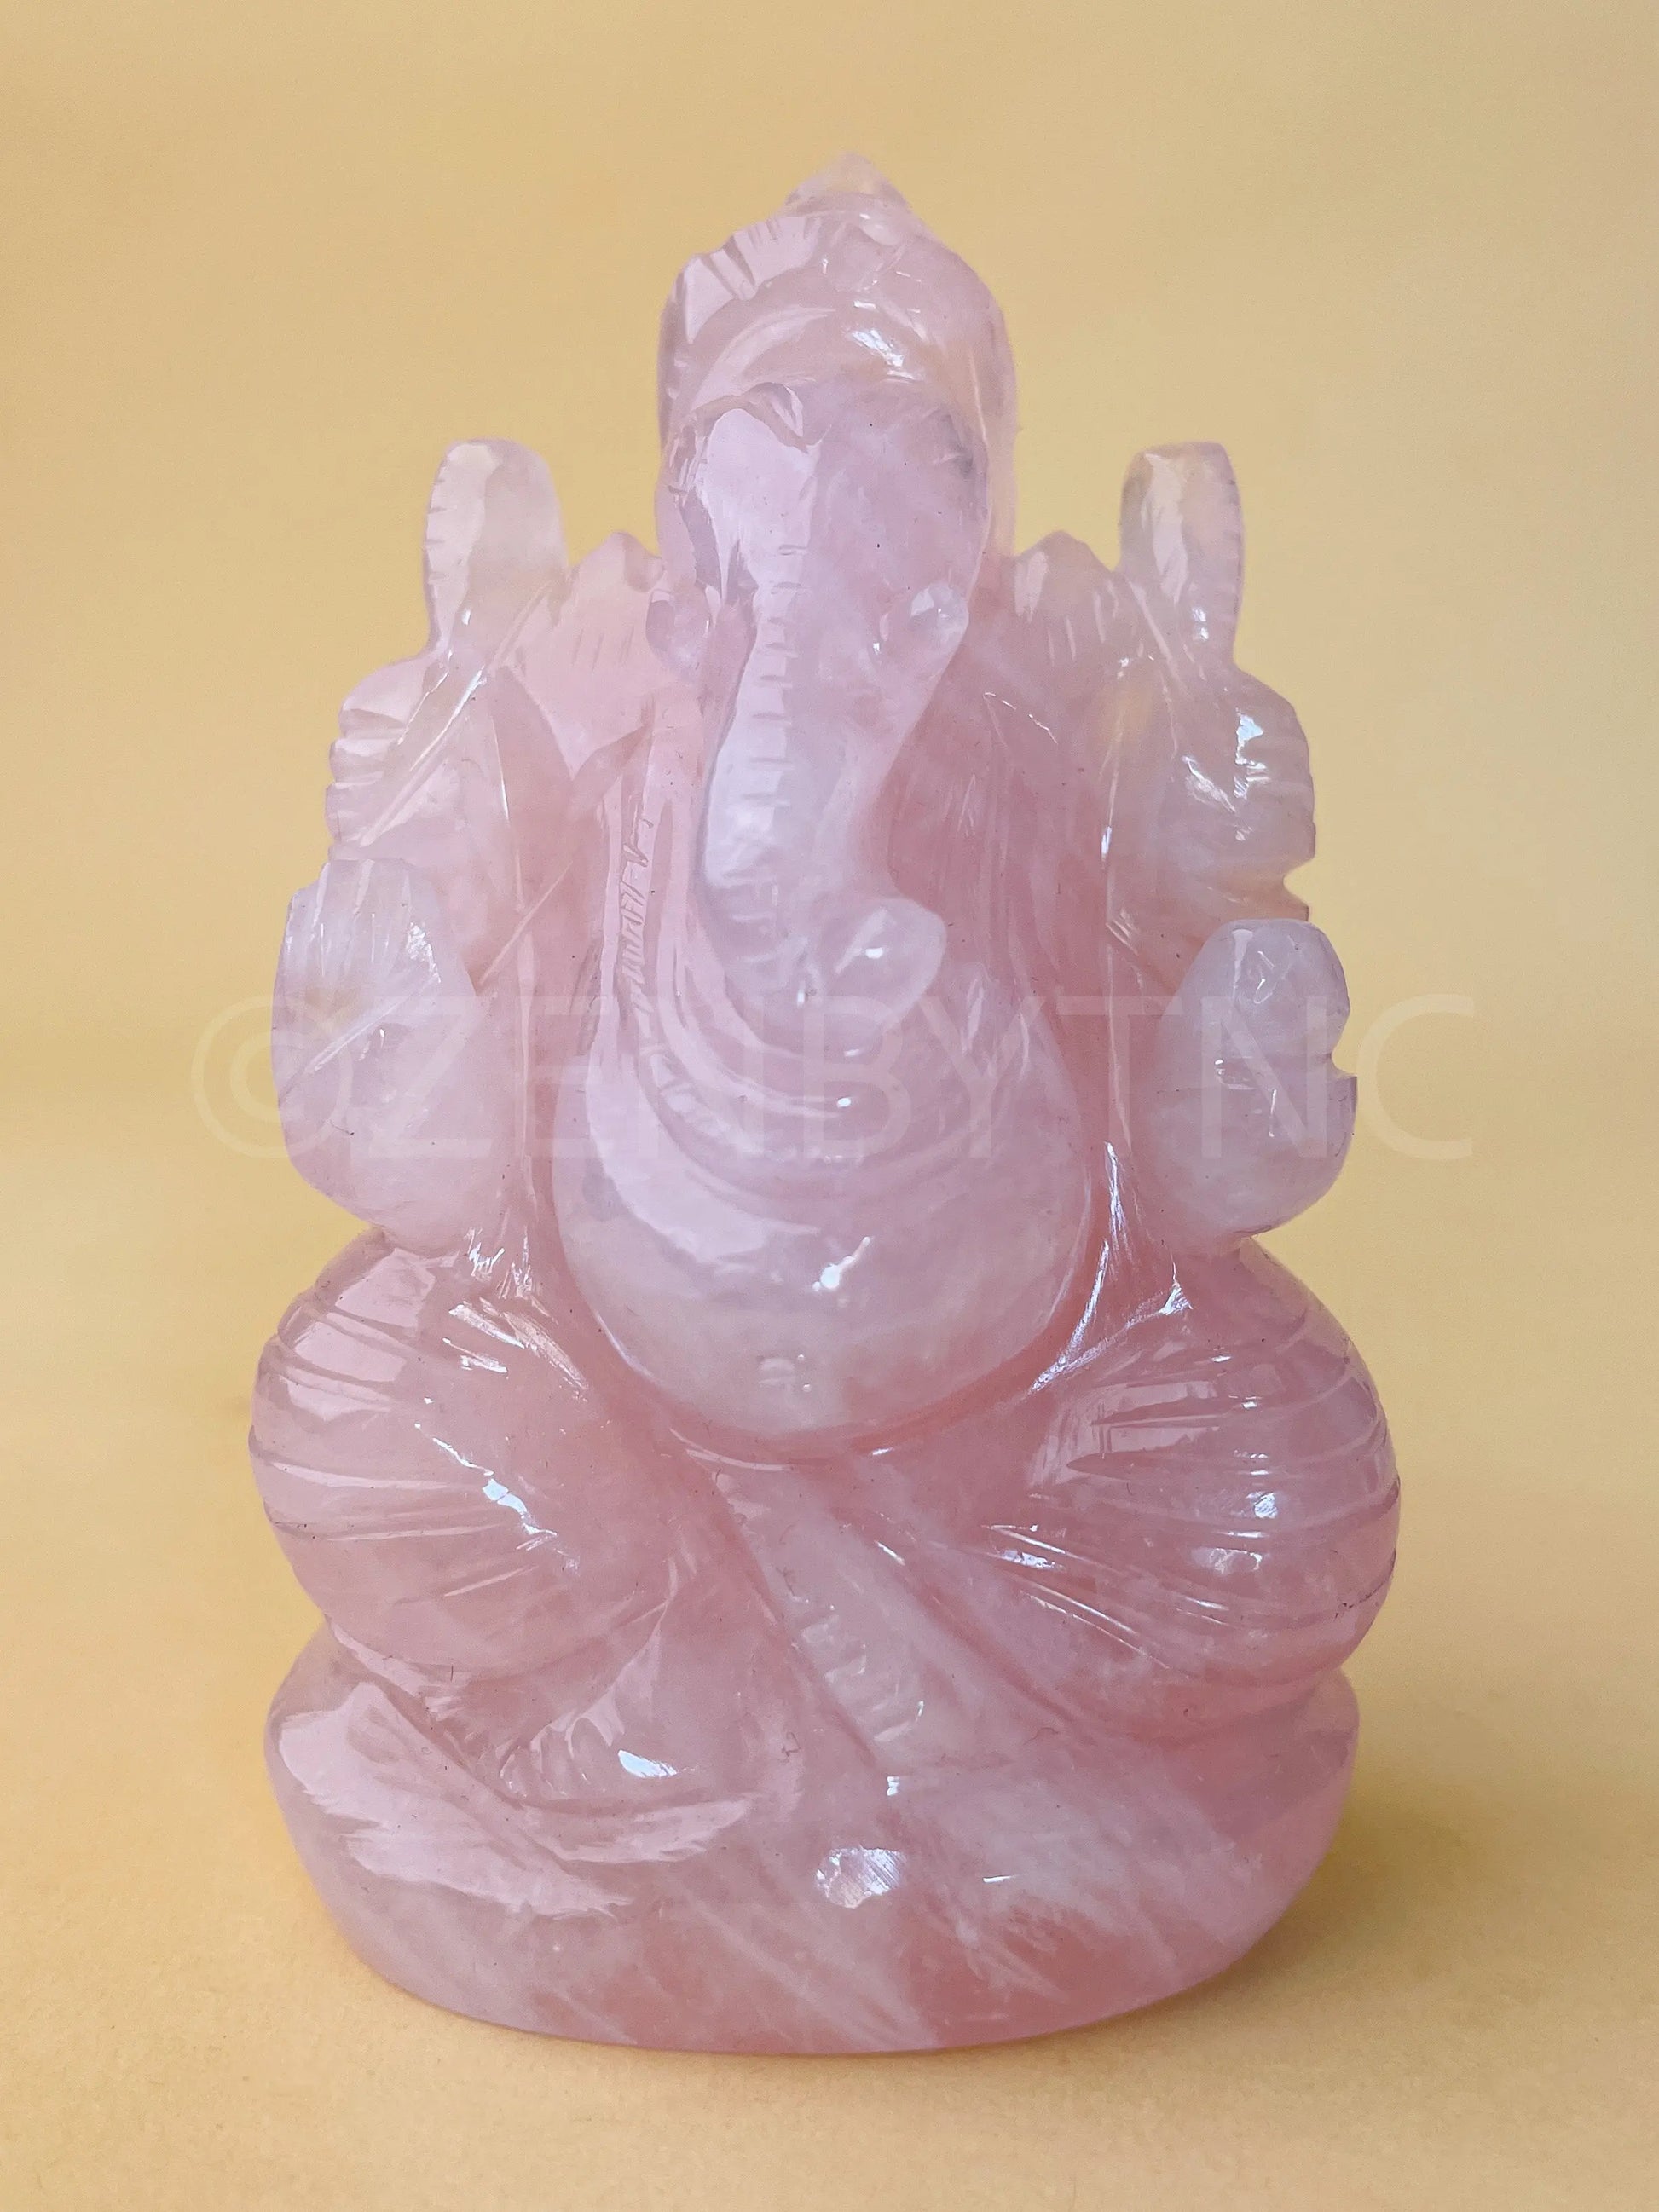 Lord Ganesha - Rose Quartz The Zen Crystals